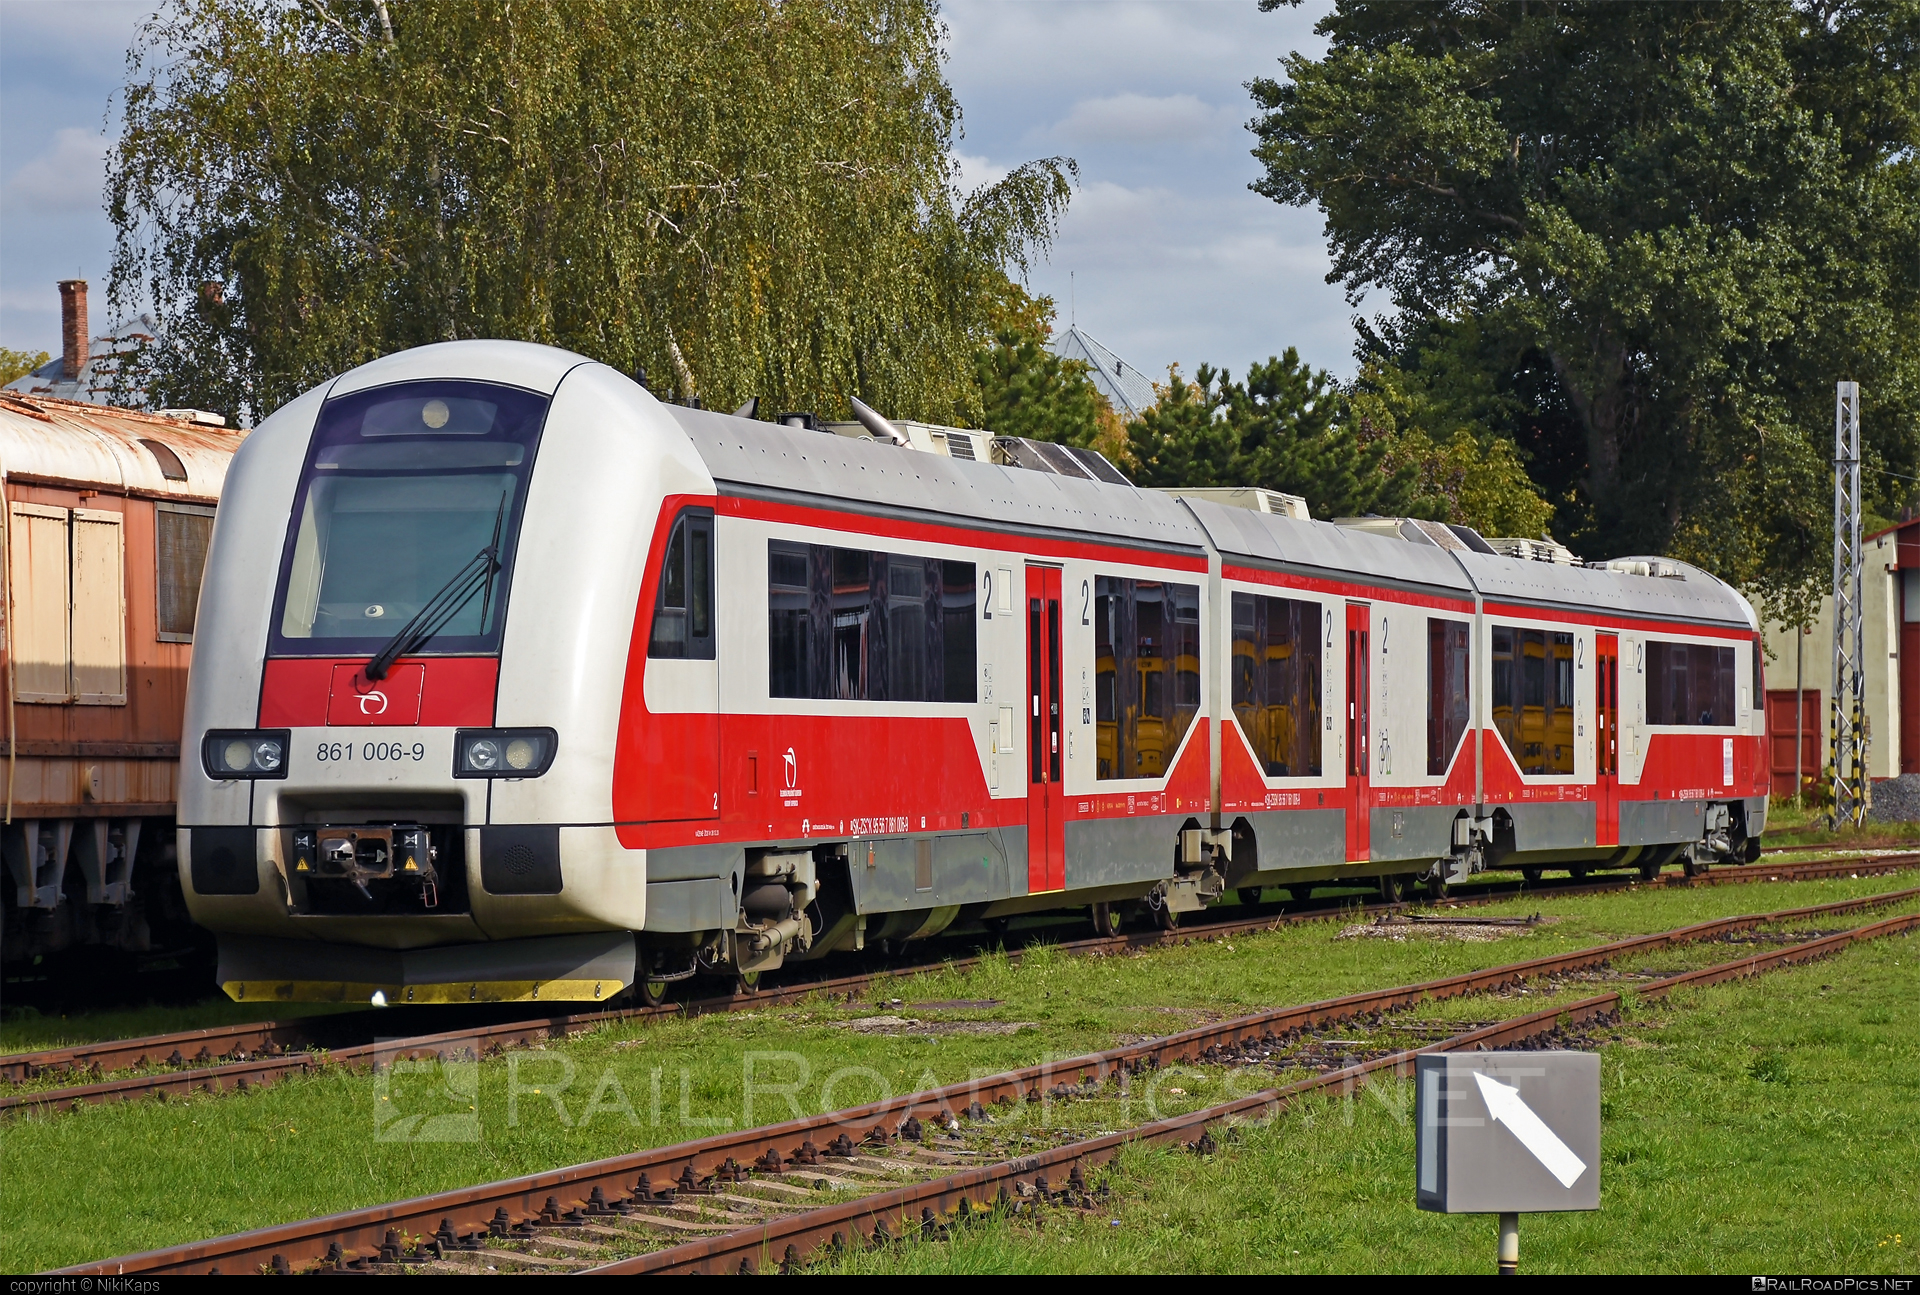 ŽOS Vrútky Class 861.0 - 861 006-9 operated by Železničná Spoločnost' Slovensko, a.s. #ZeleznicnaSpolocnostSlovensko #dunihlav #husenica #zosvrutky #zosvrutky861 #zosvrutky8610 #zssk #zssk861 #zssk8610